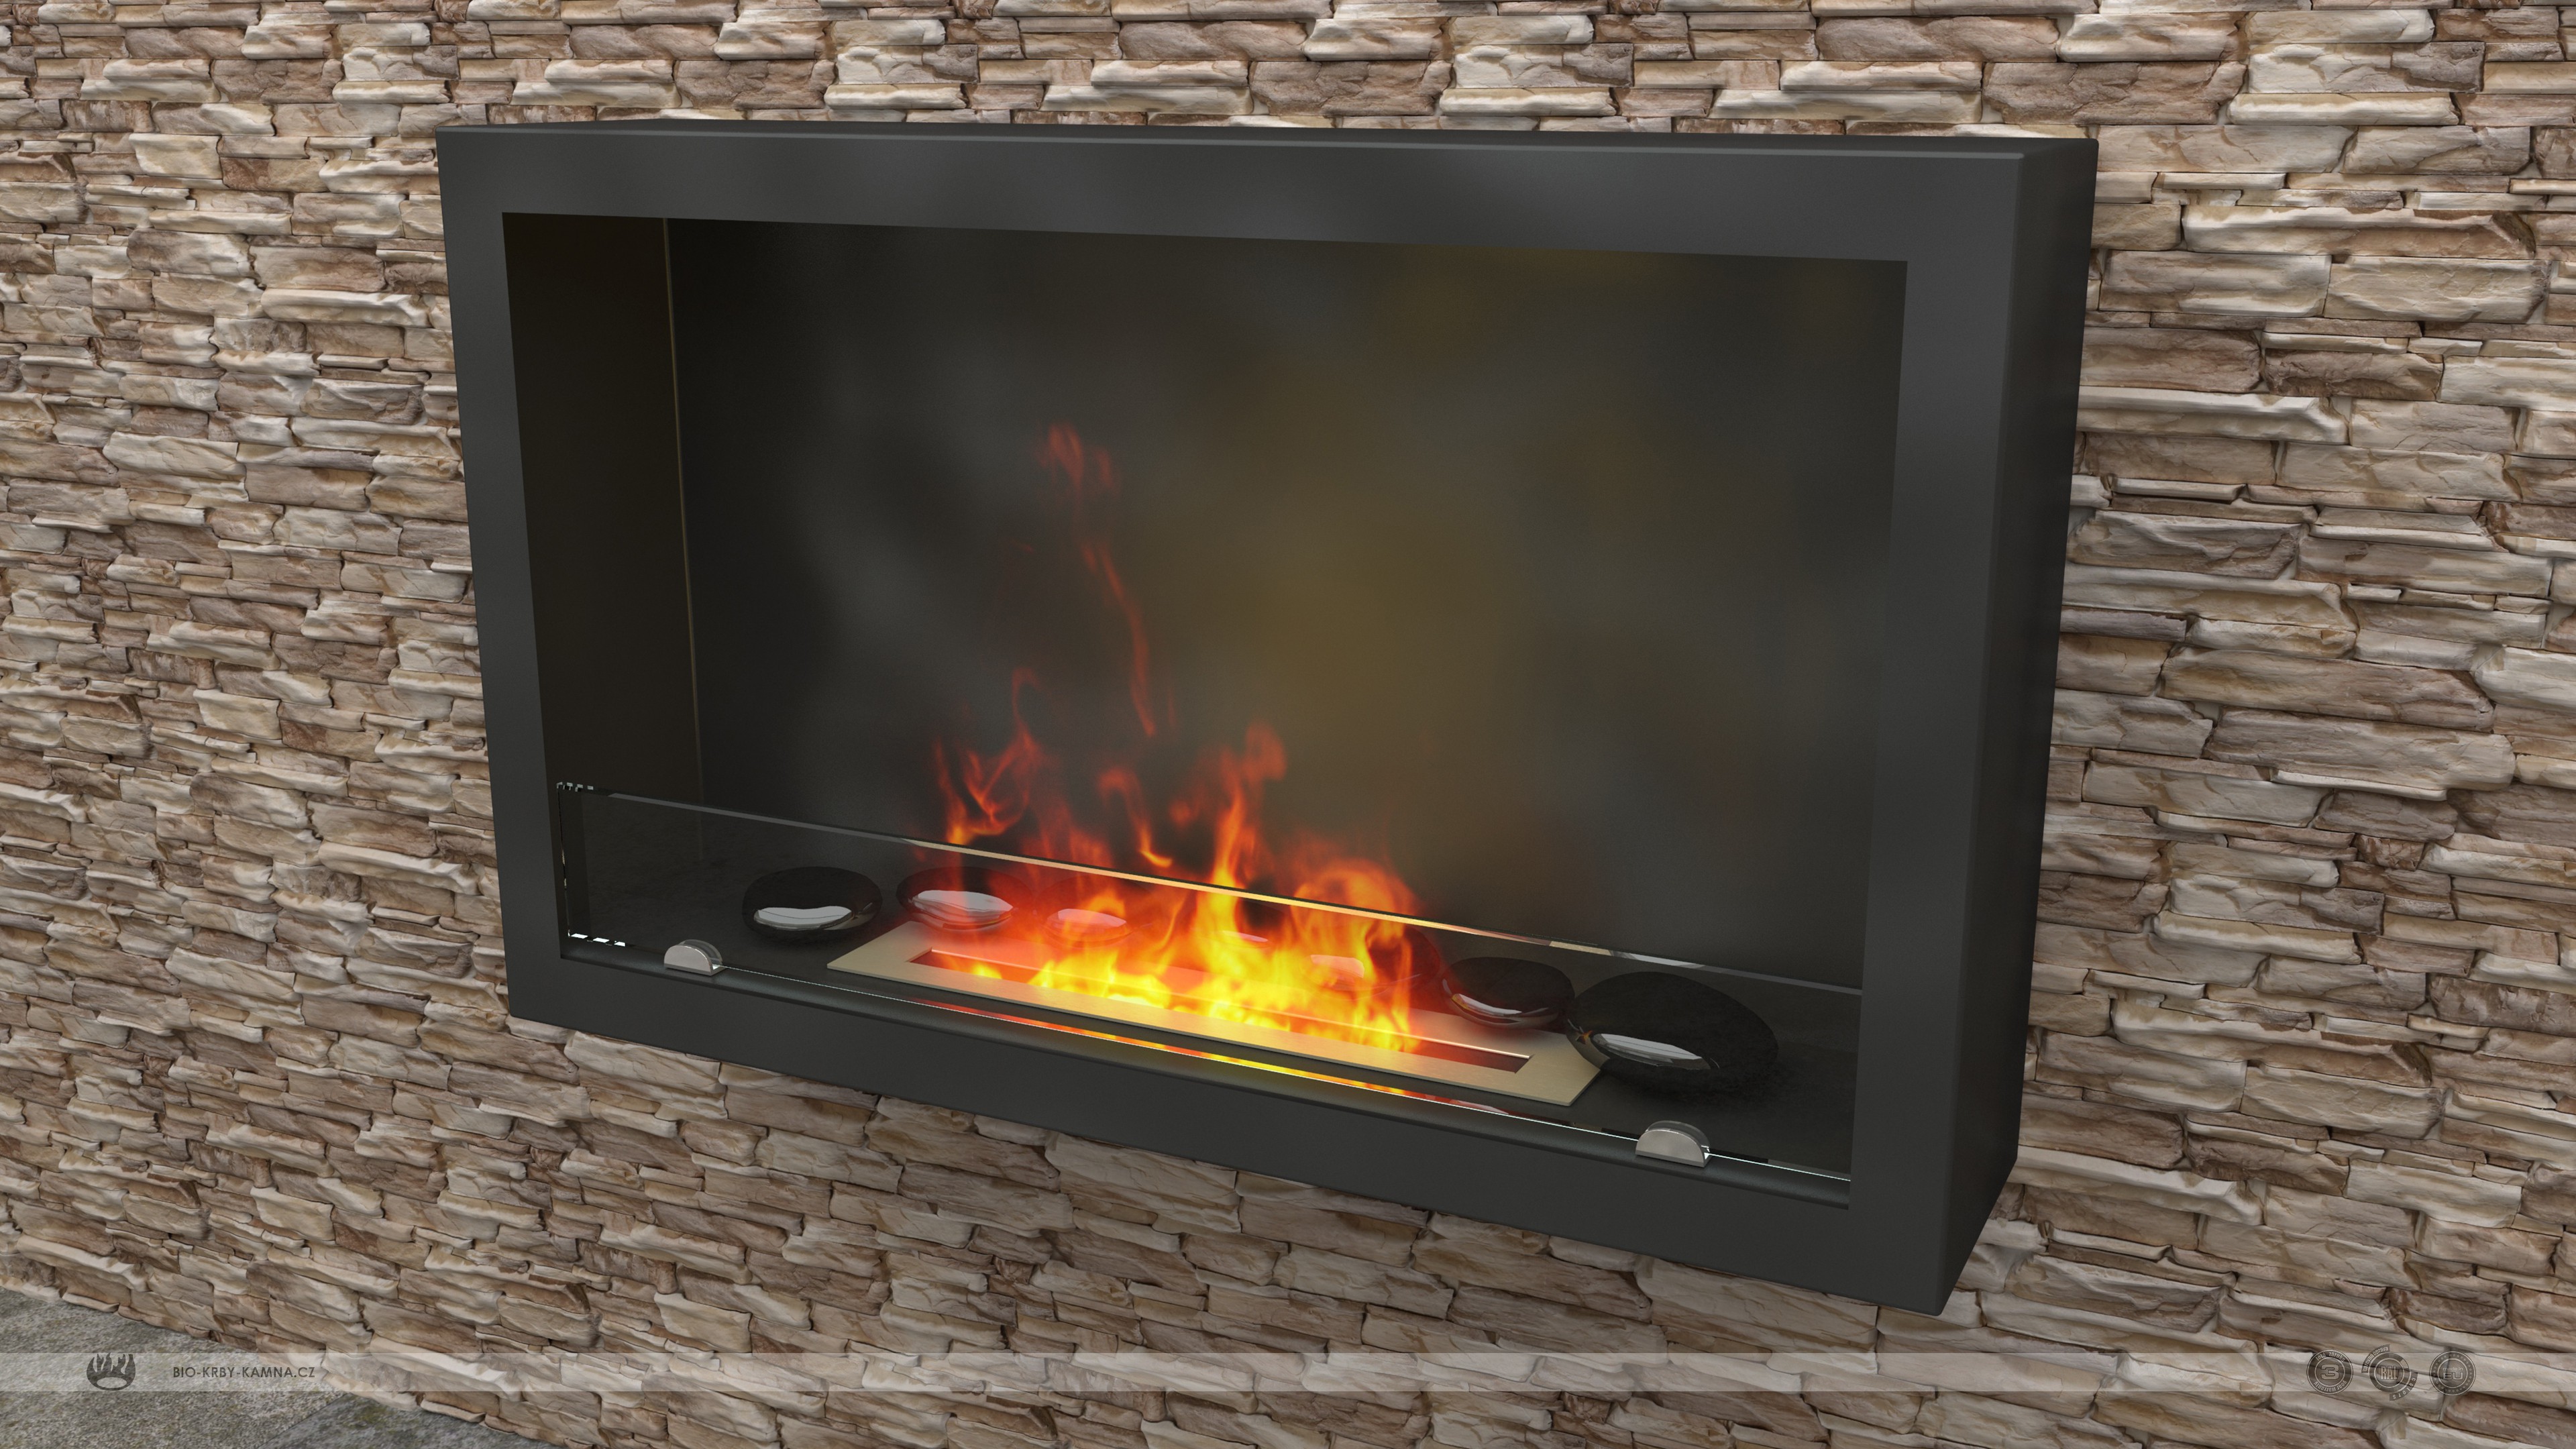 Fireplace without chimney AF-61 + Burner 480 + Black polished stones